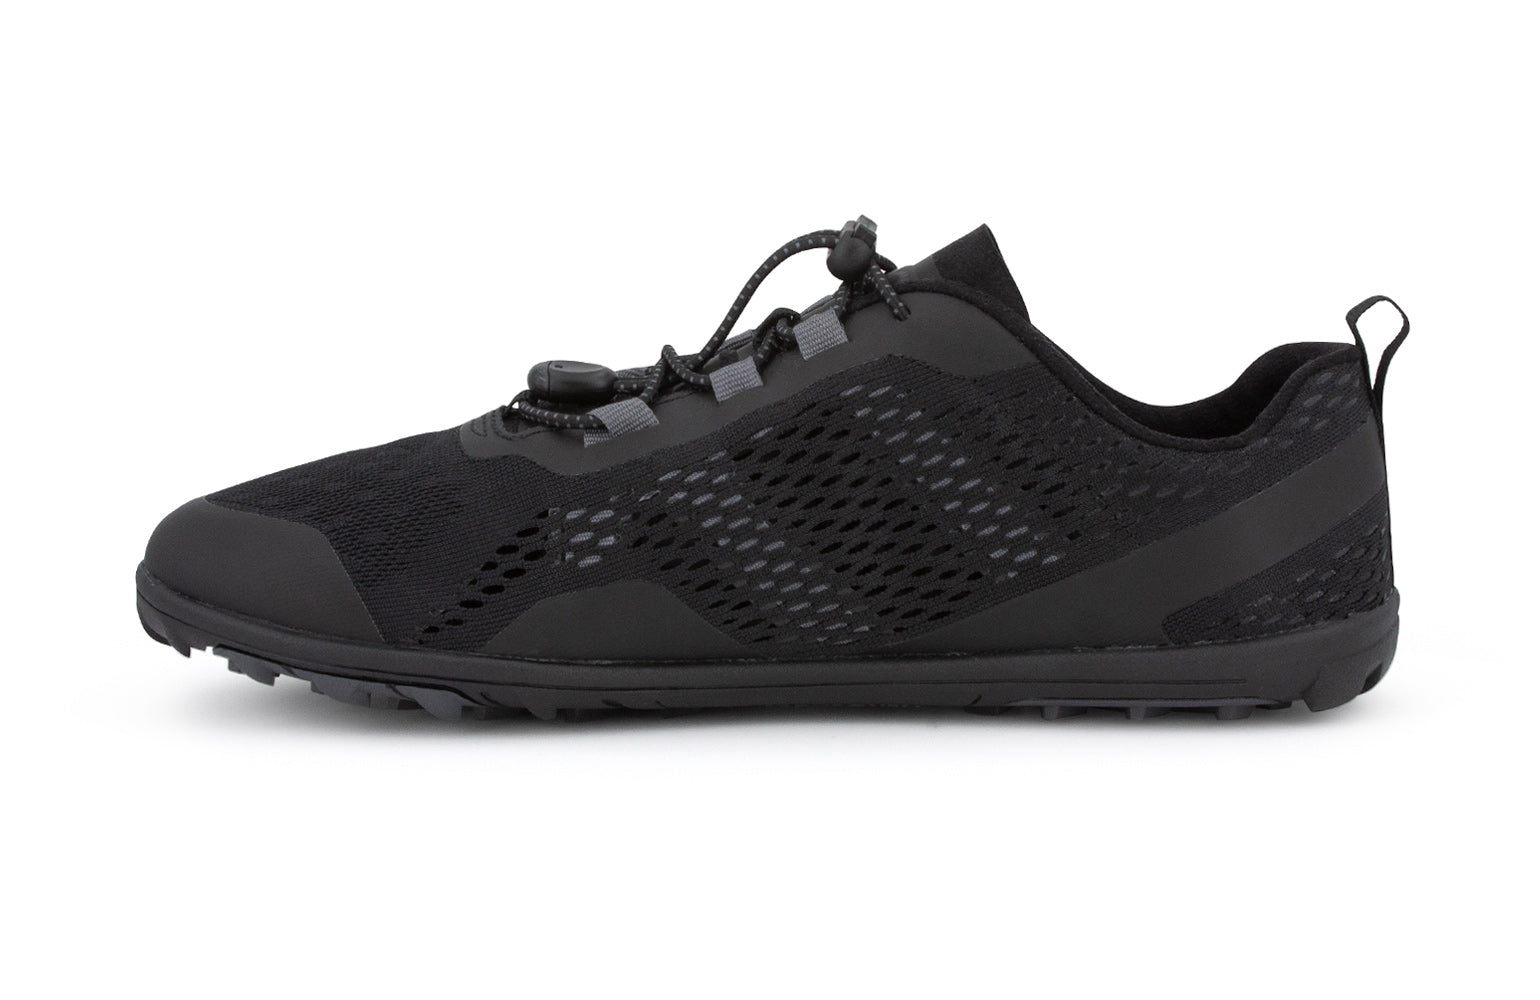 Xero Shoes Aqua X Sport barfods vand træningssko til mænd i farven black, inderside